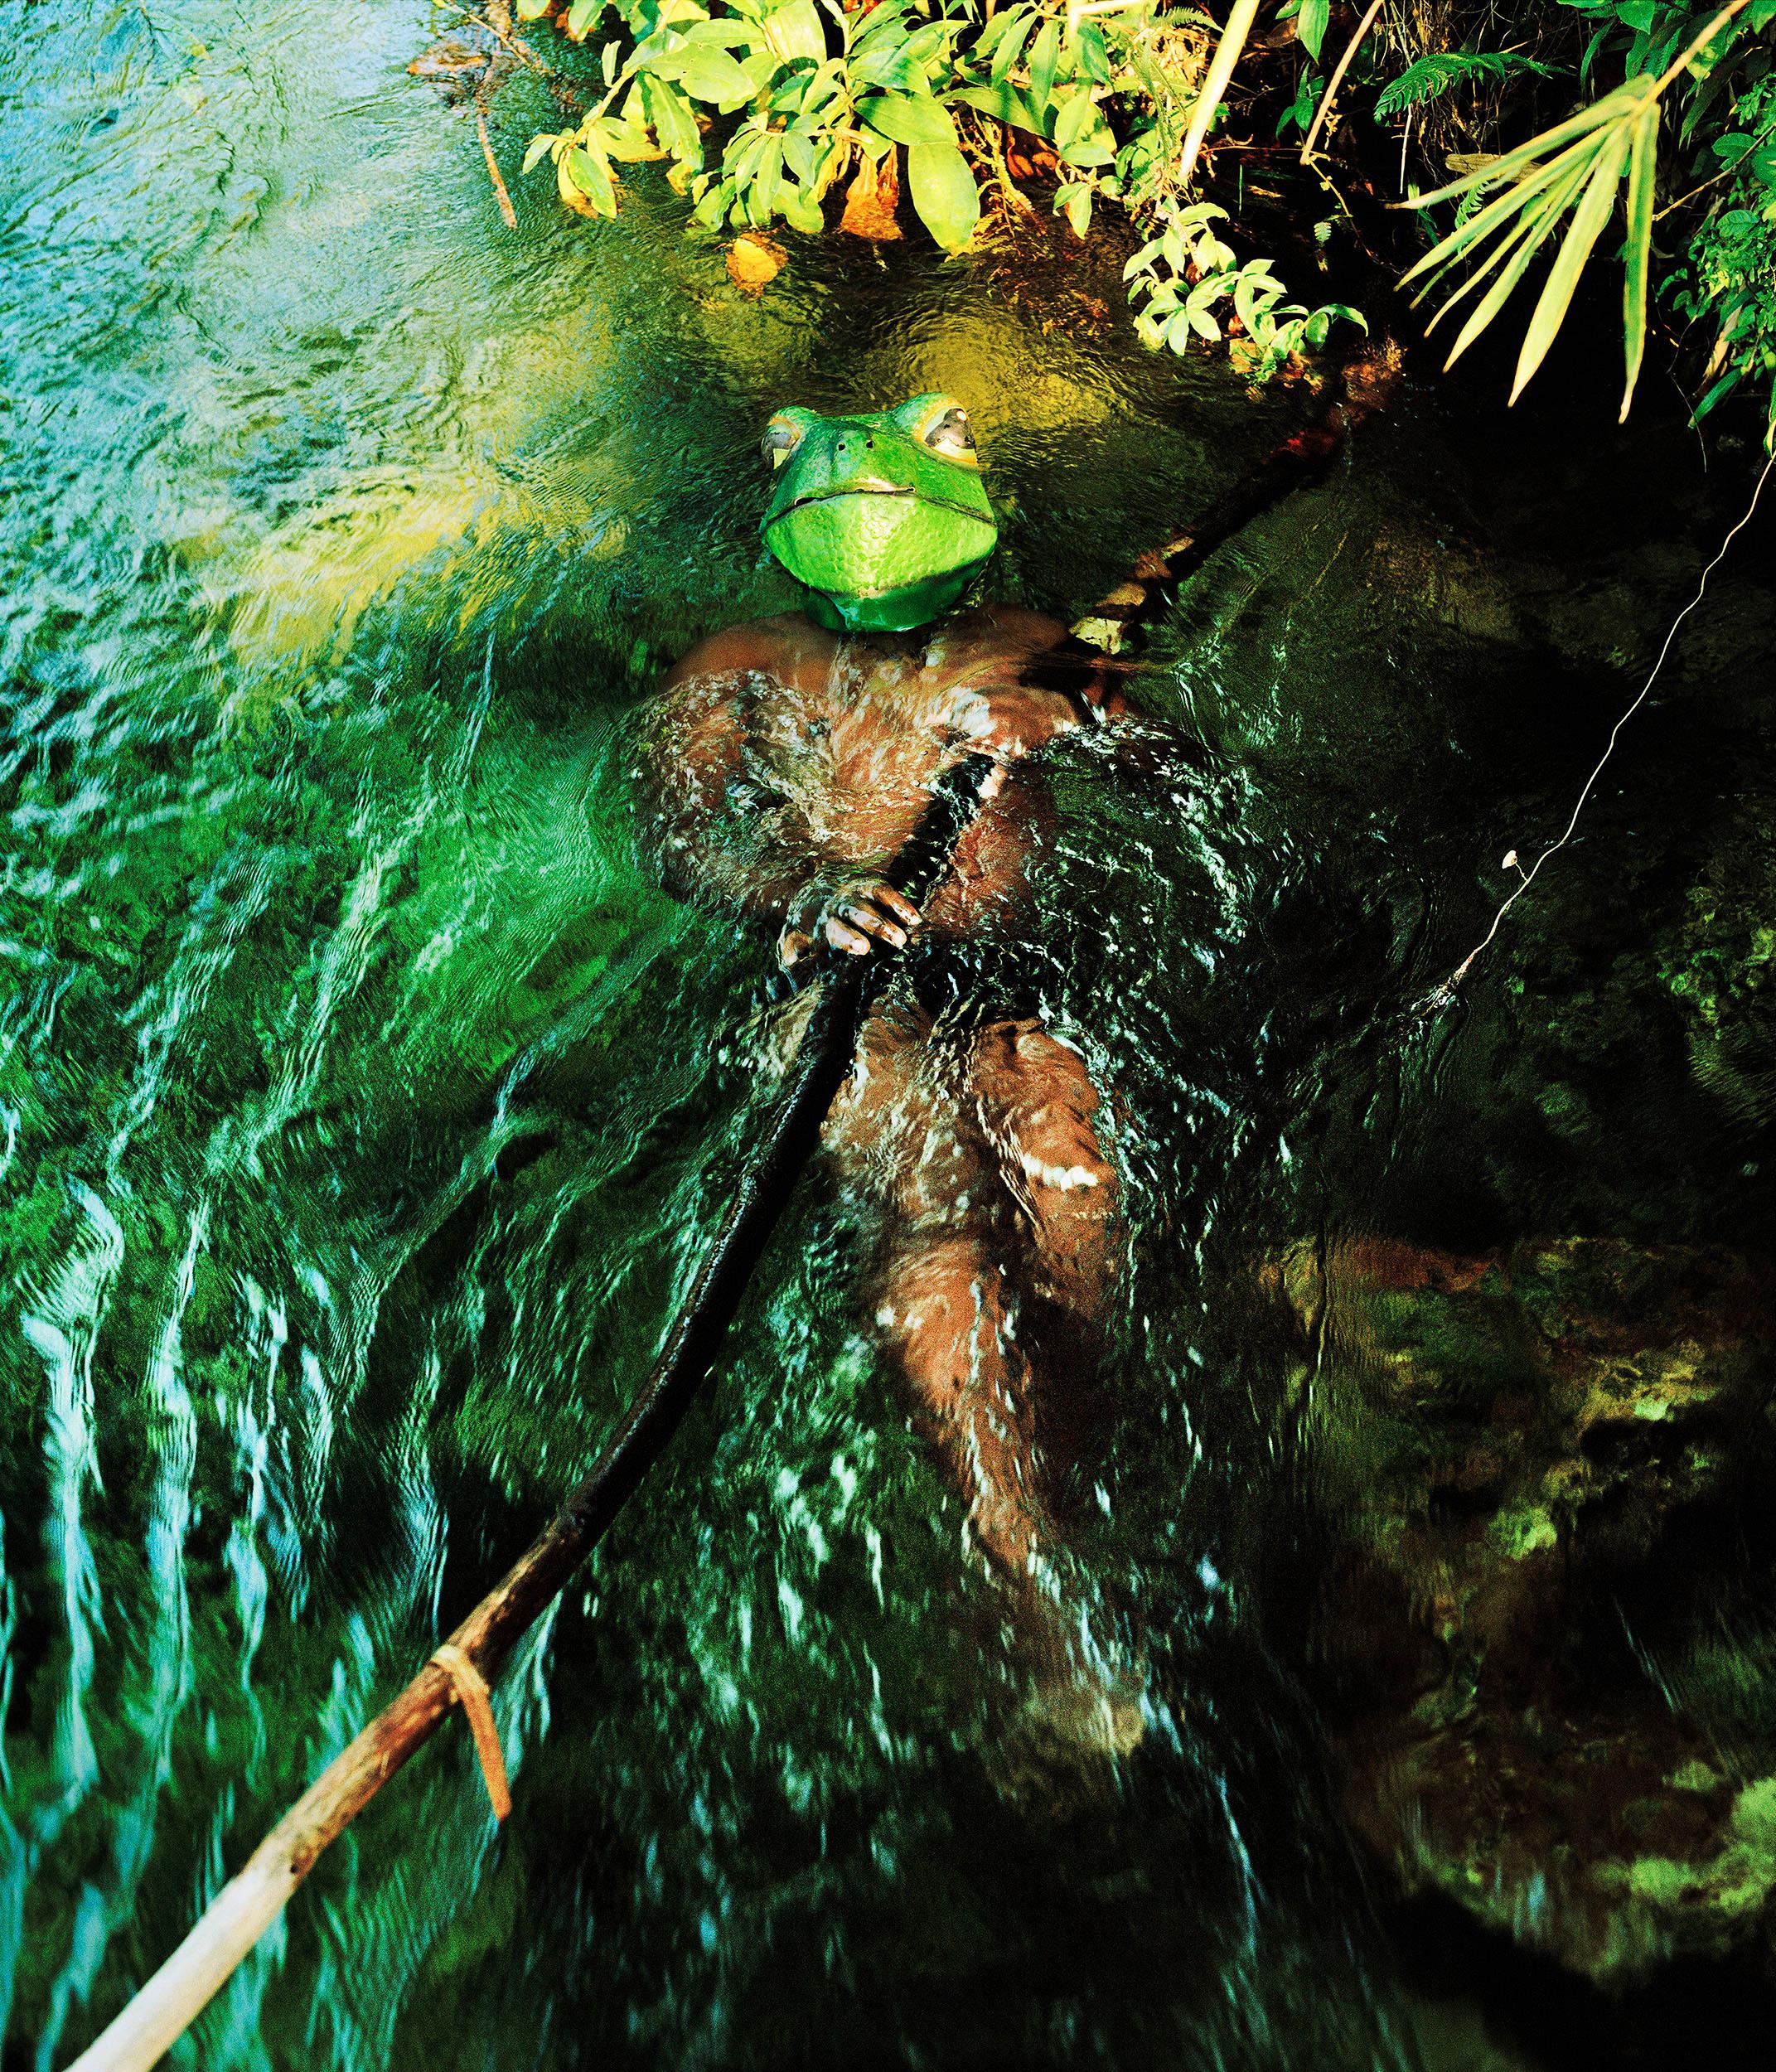 Verena Prenner Portrait Photograph - Congo Frog - 21st Century Landscape Portrait Animal Photography Edition